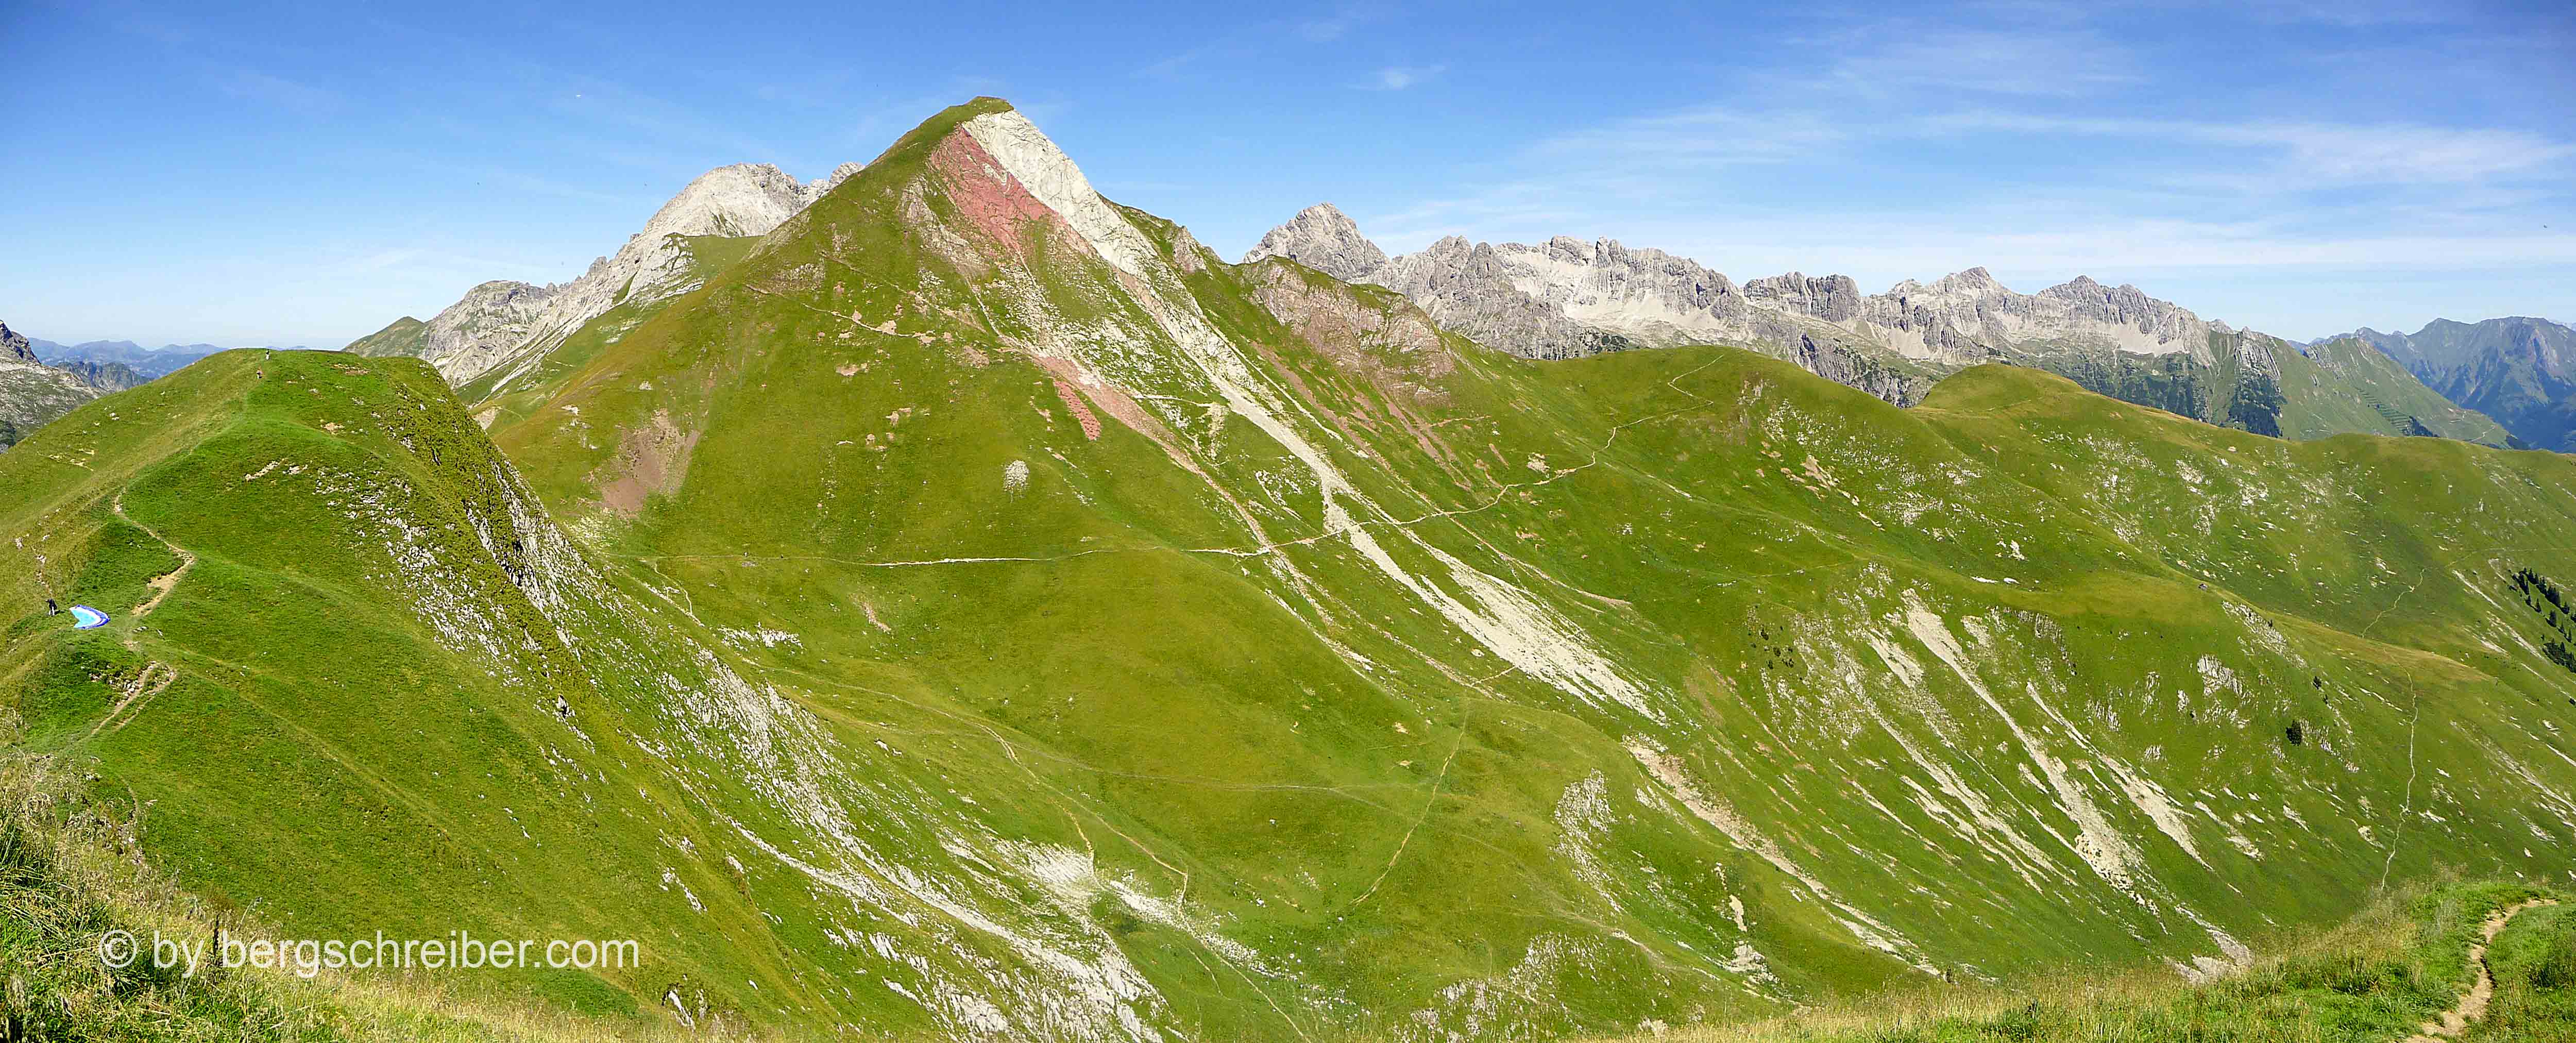 Die Hornbachkette mit dem markant roten Gipfel der Rothornspitze